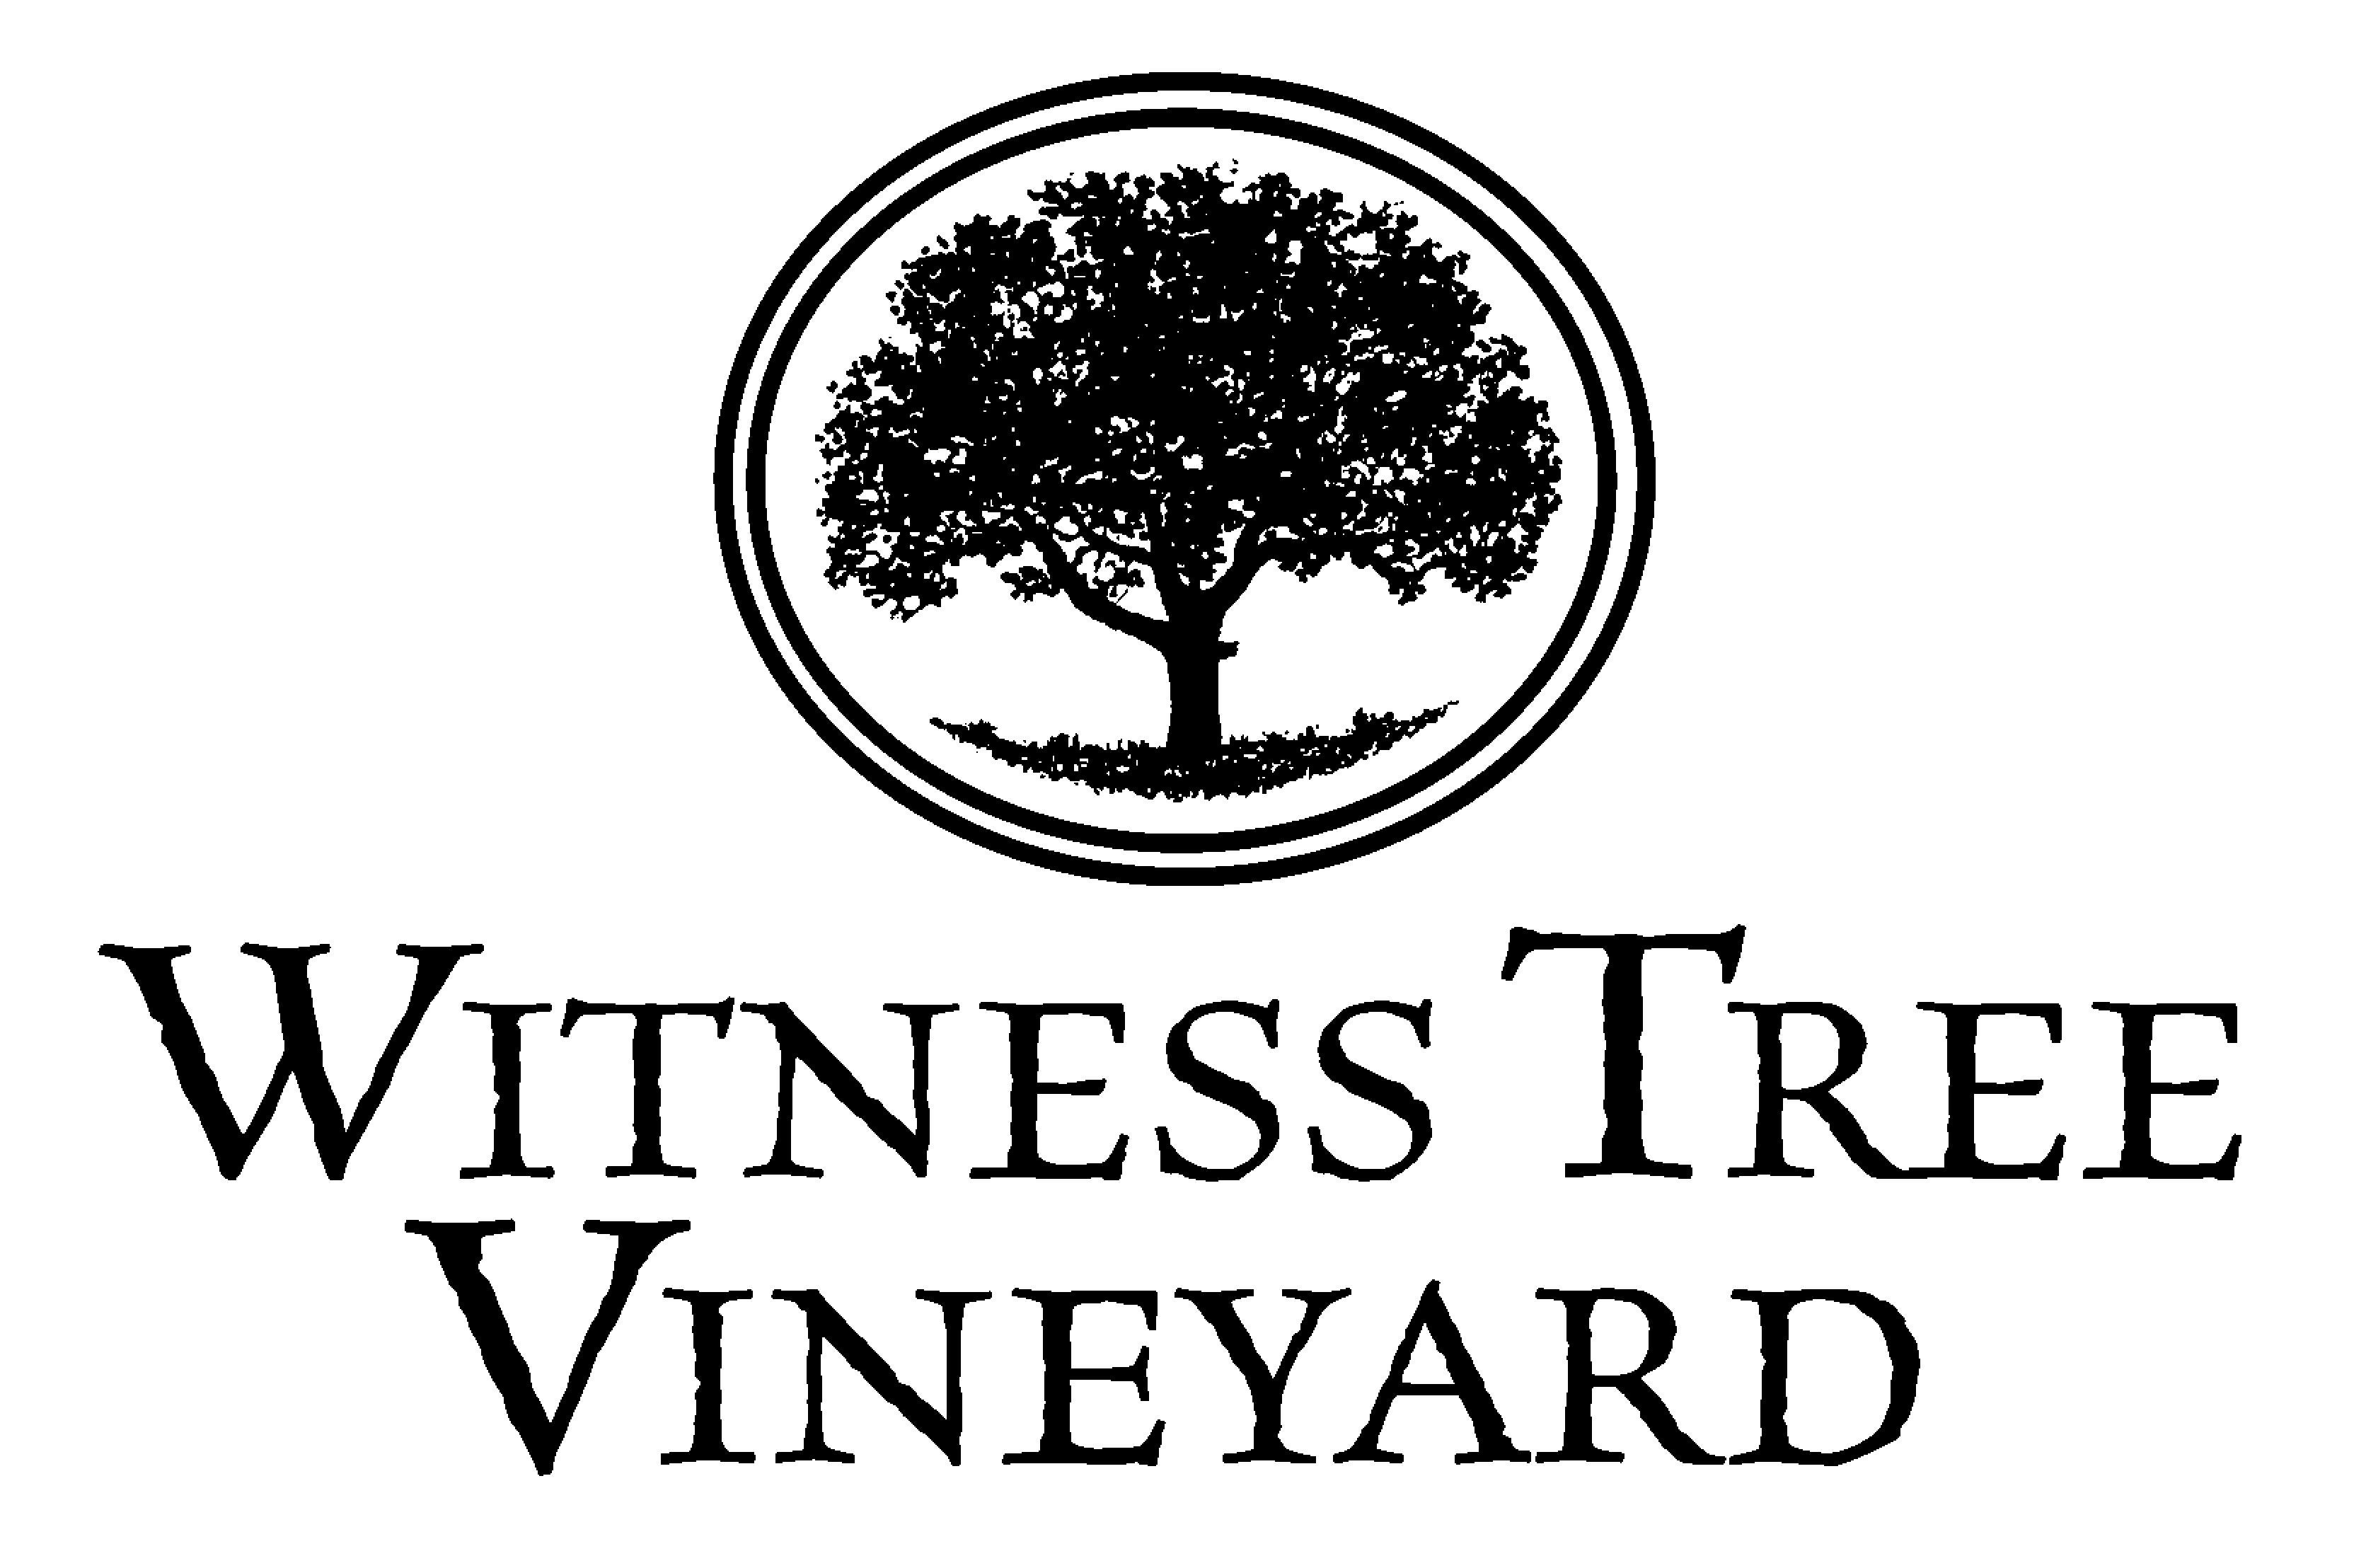 Vineyard Logo - Logos. Witness Tree Vineyard